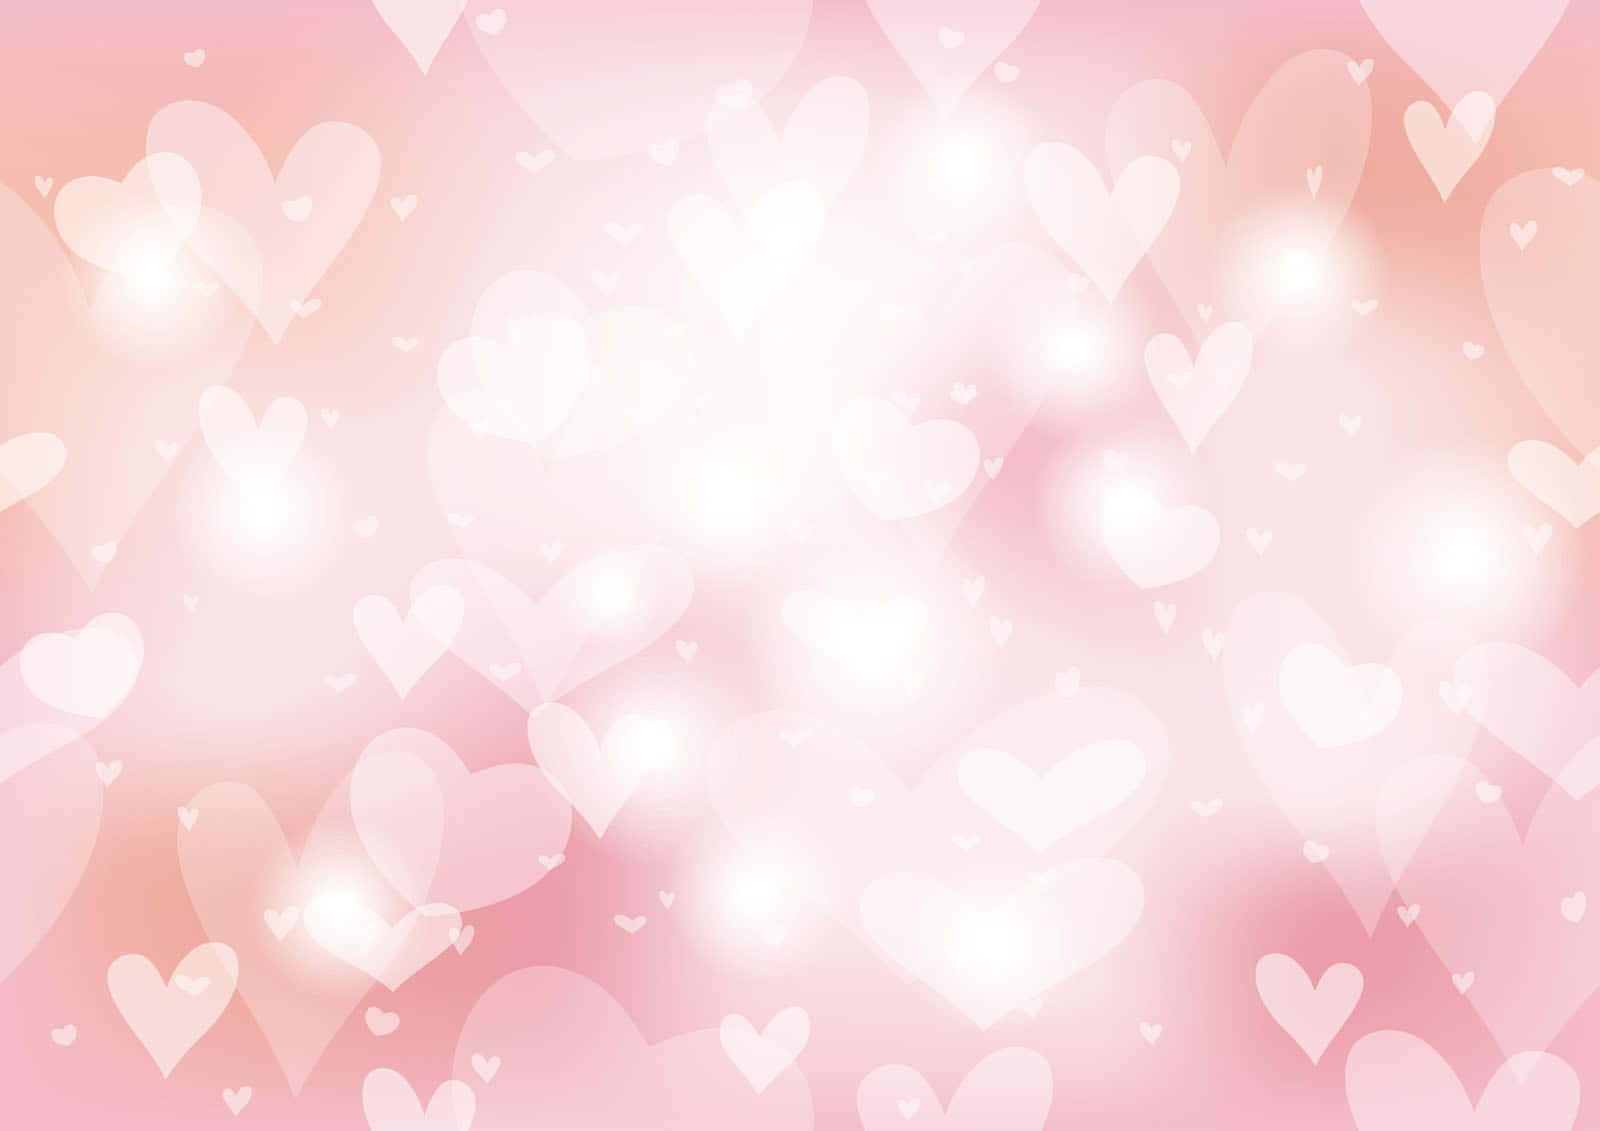 Romantischehintergrundillustration Mit Pinken Herzen